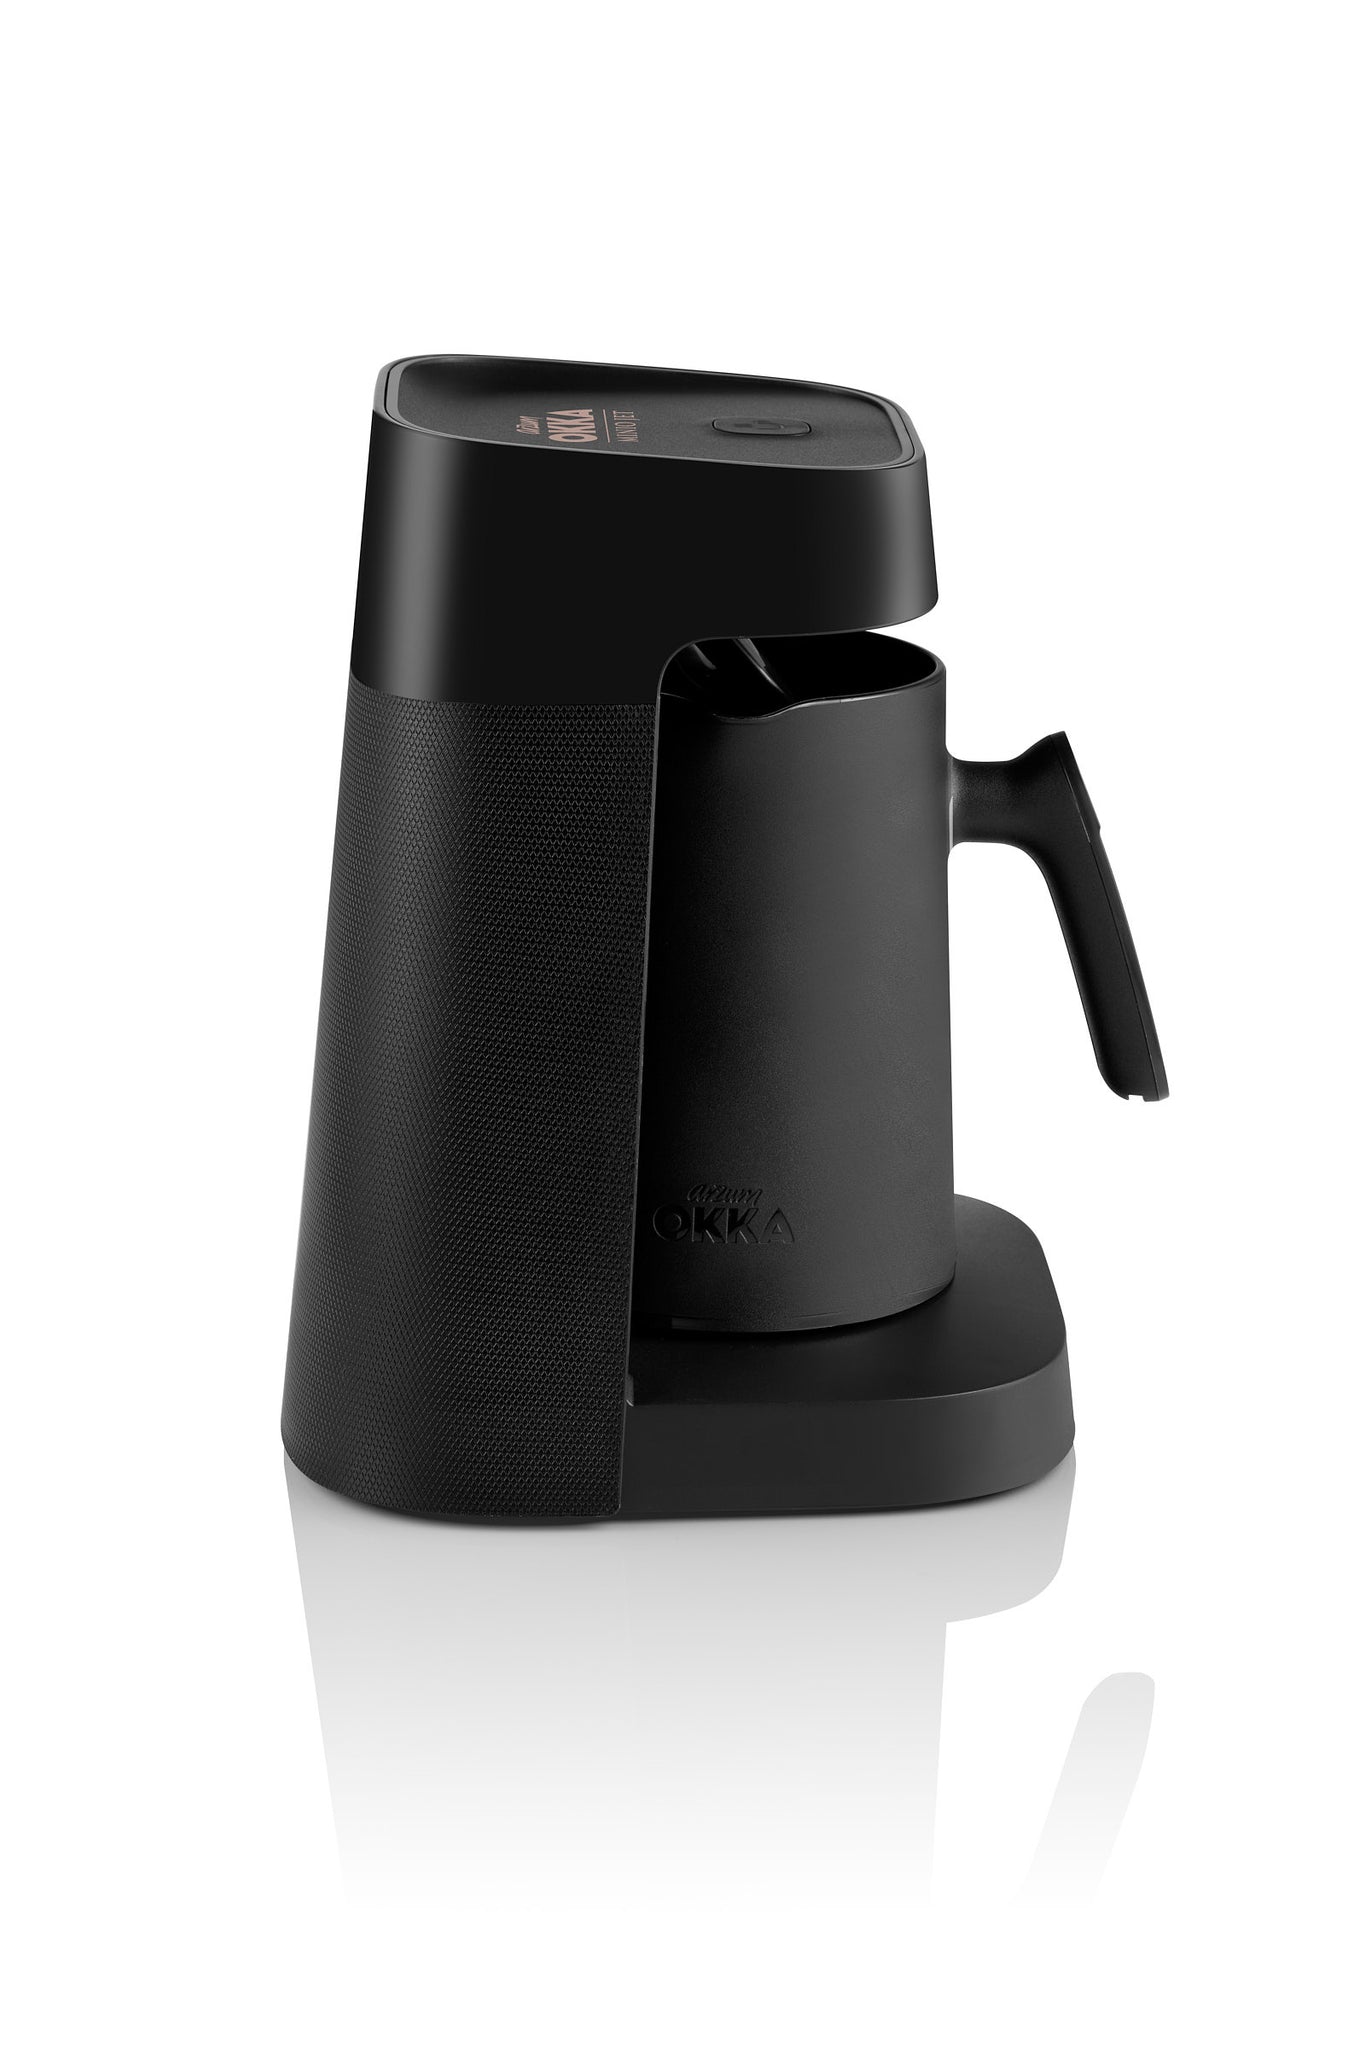 أرزوم أوكا منيو جيت (OK0017) ماكينة صنع القهوة التركية أسود - نحاسي